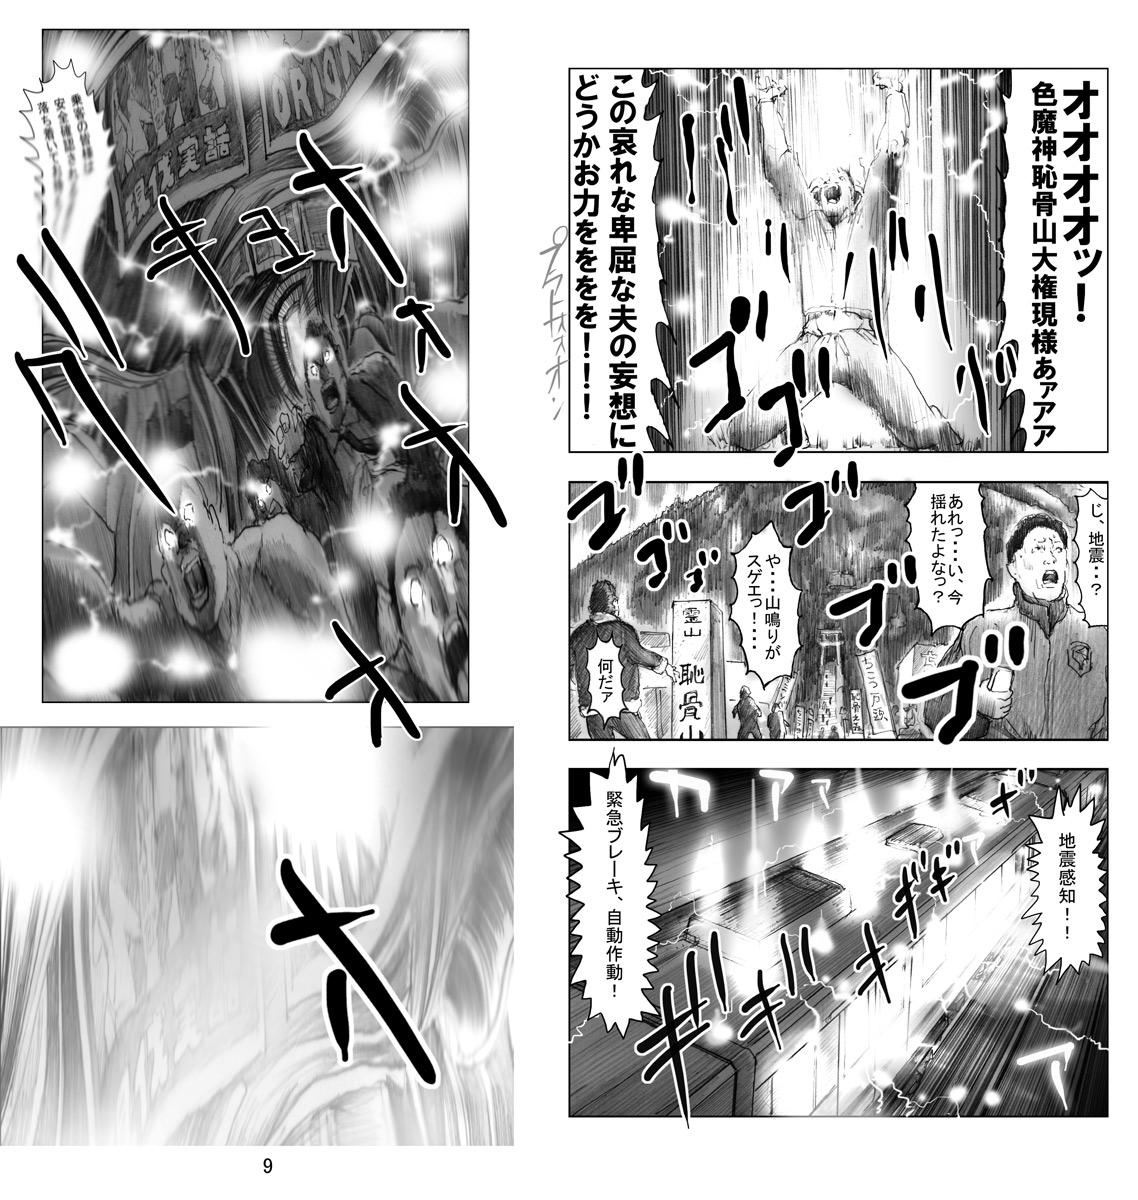 Puba Utsukushii no Shingen Part 6 Deflowered - Page 10